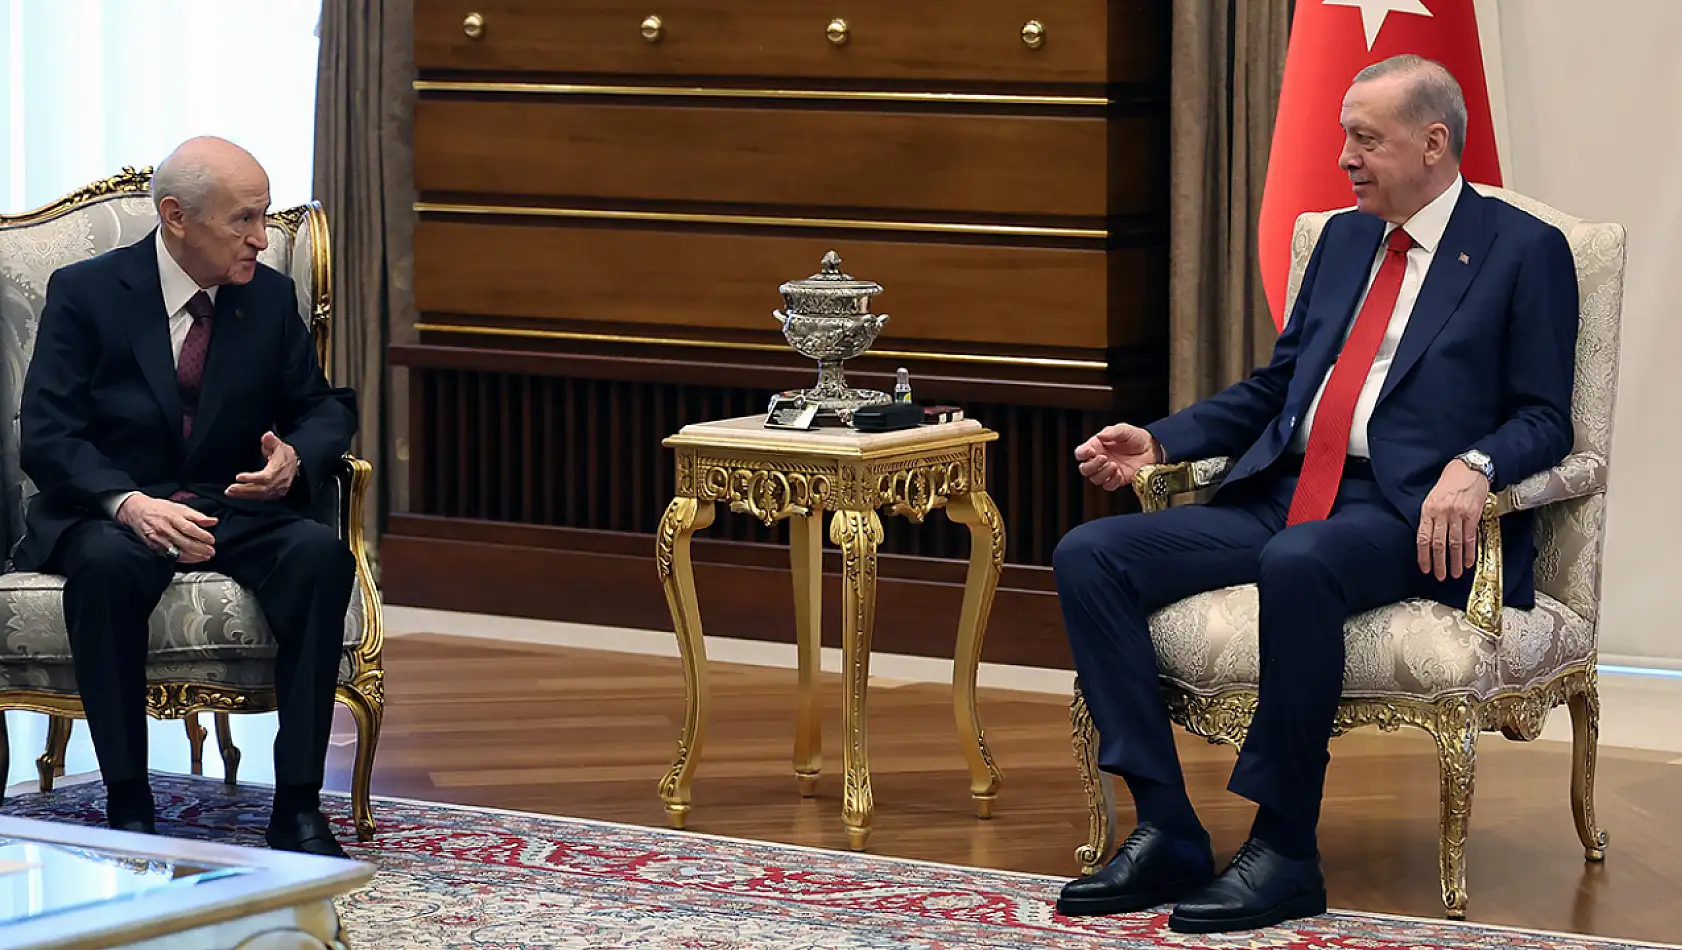 Cumhurbaşkanı Erdoğan ile Bahçeli'nin görüşmesi sona erdi